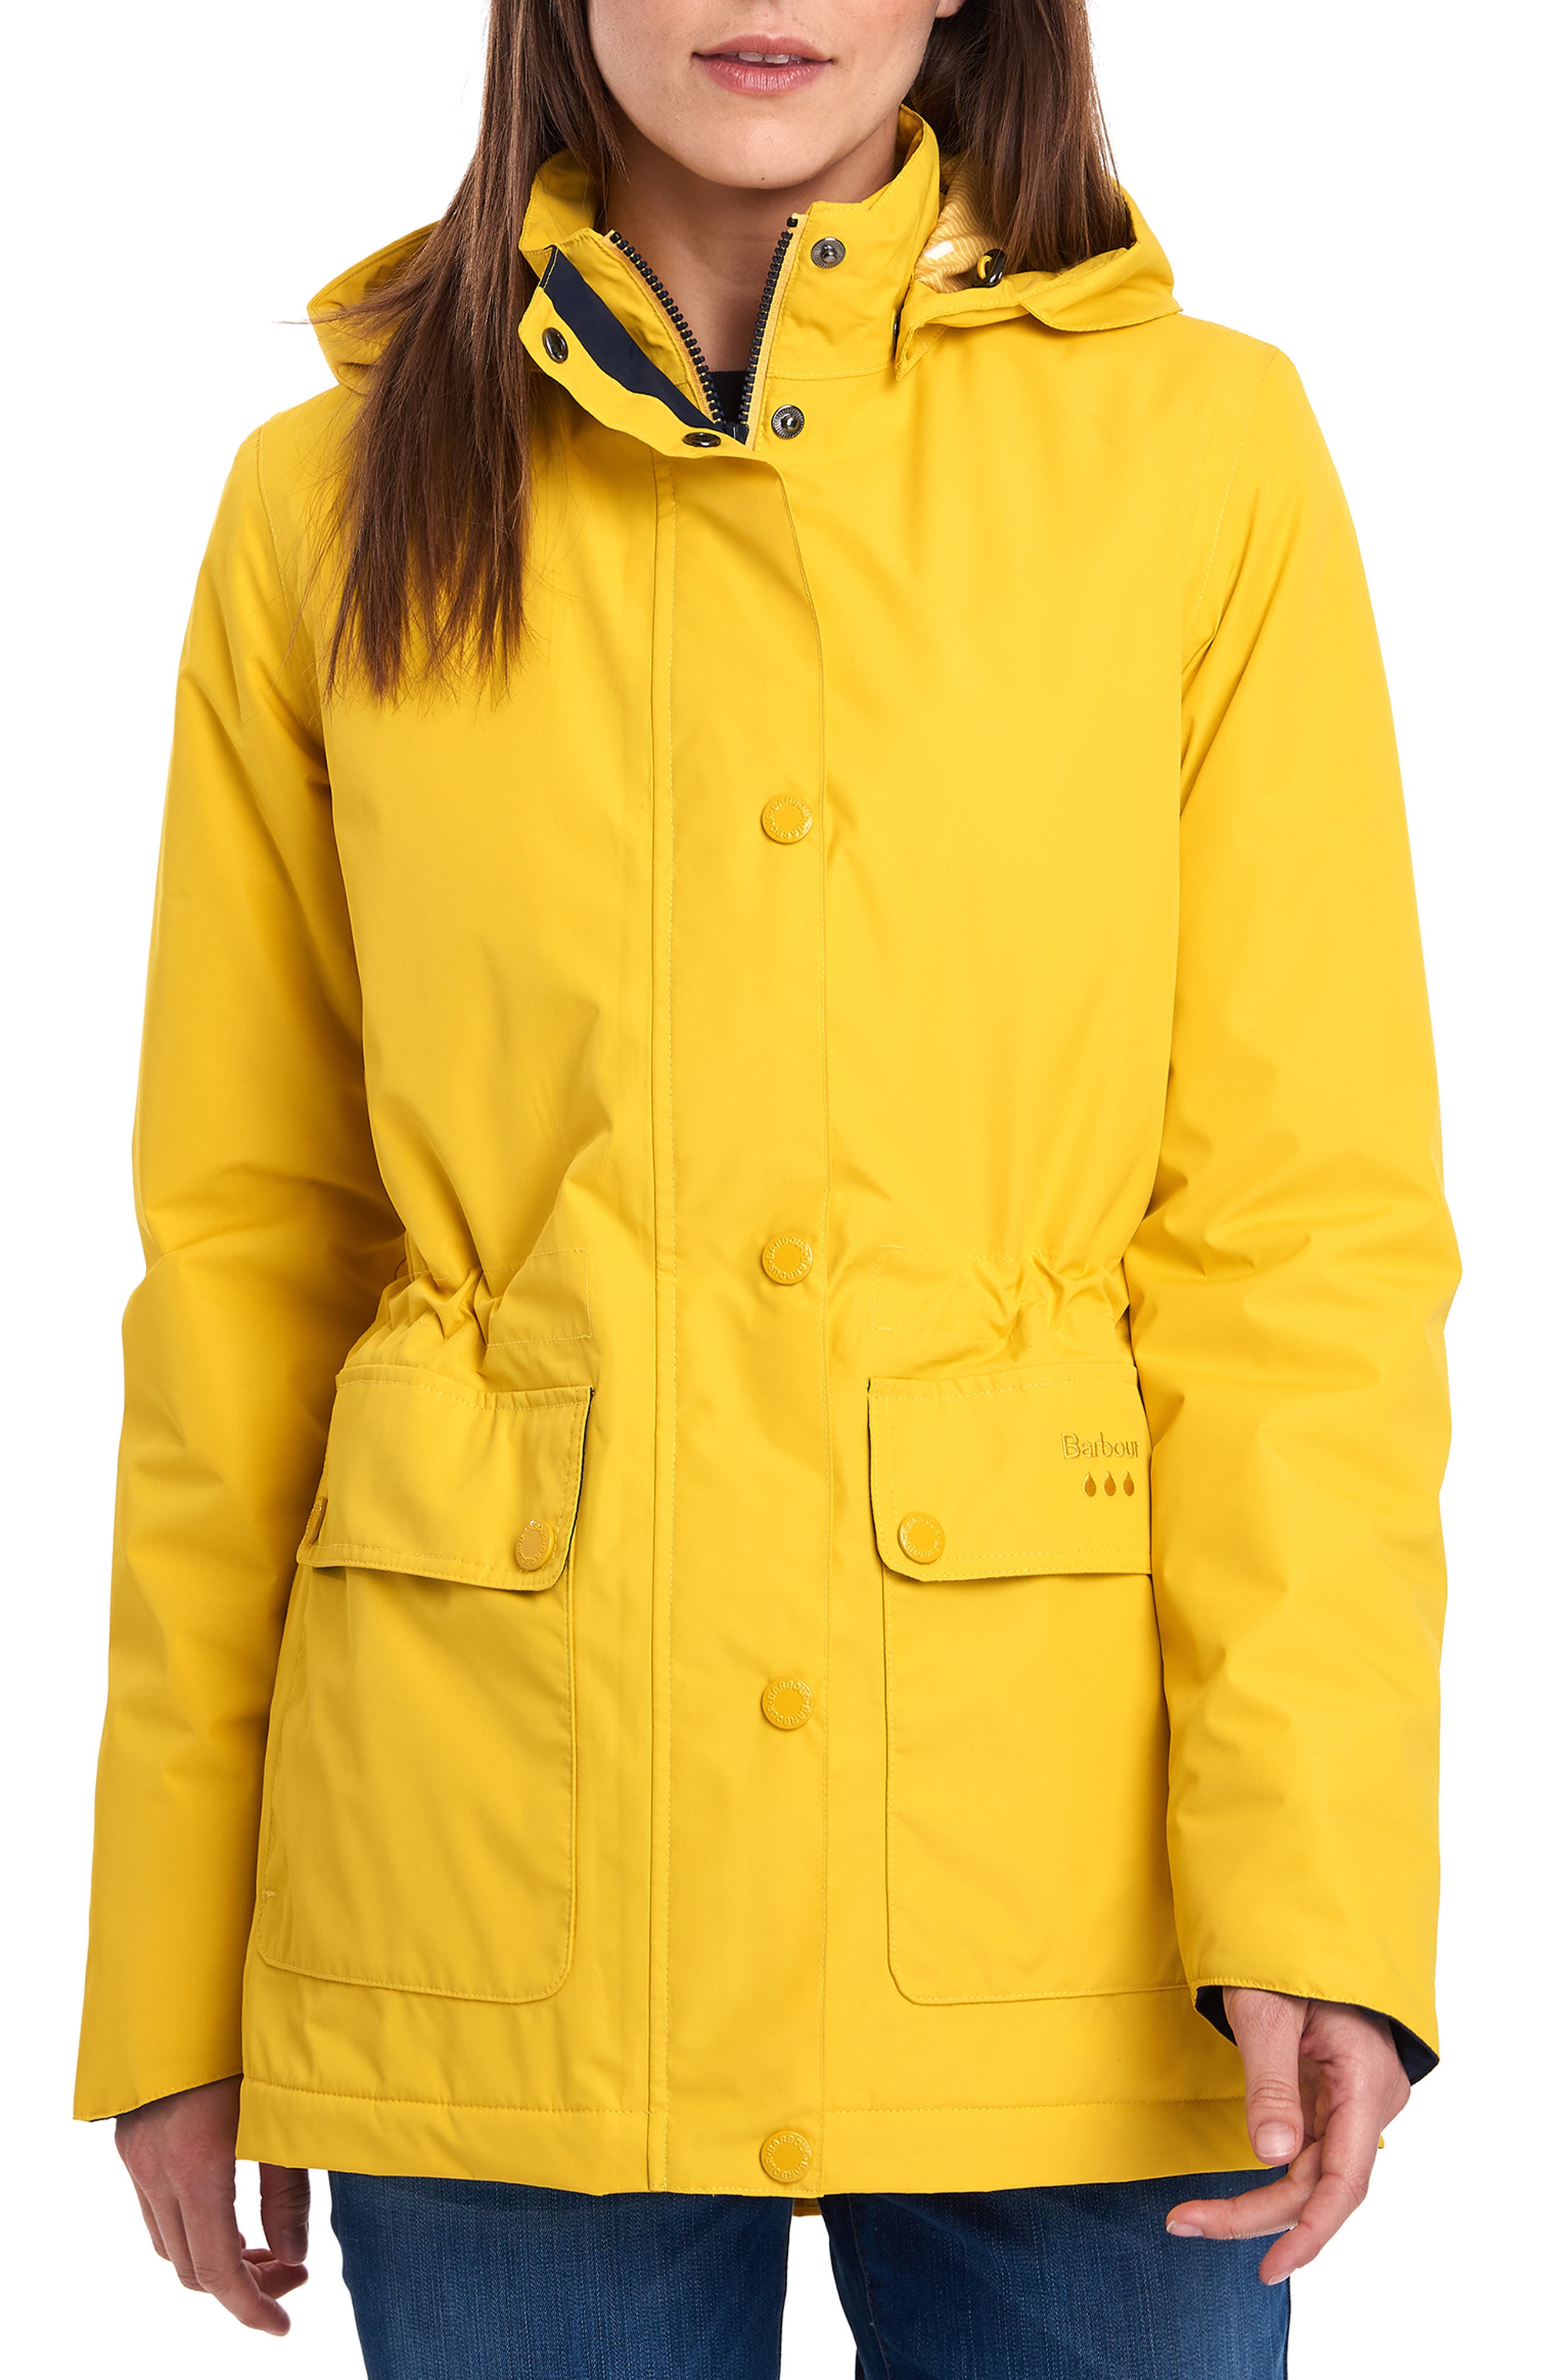 barbour women's yellow raincoat